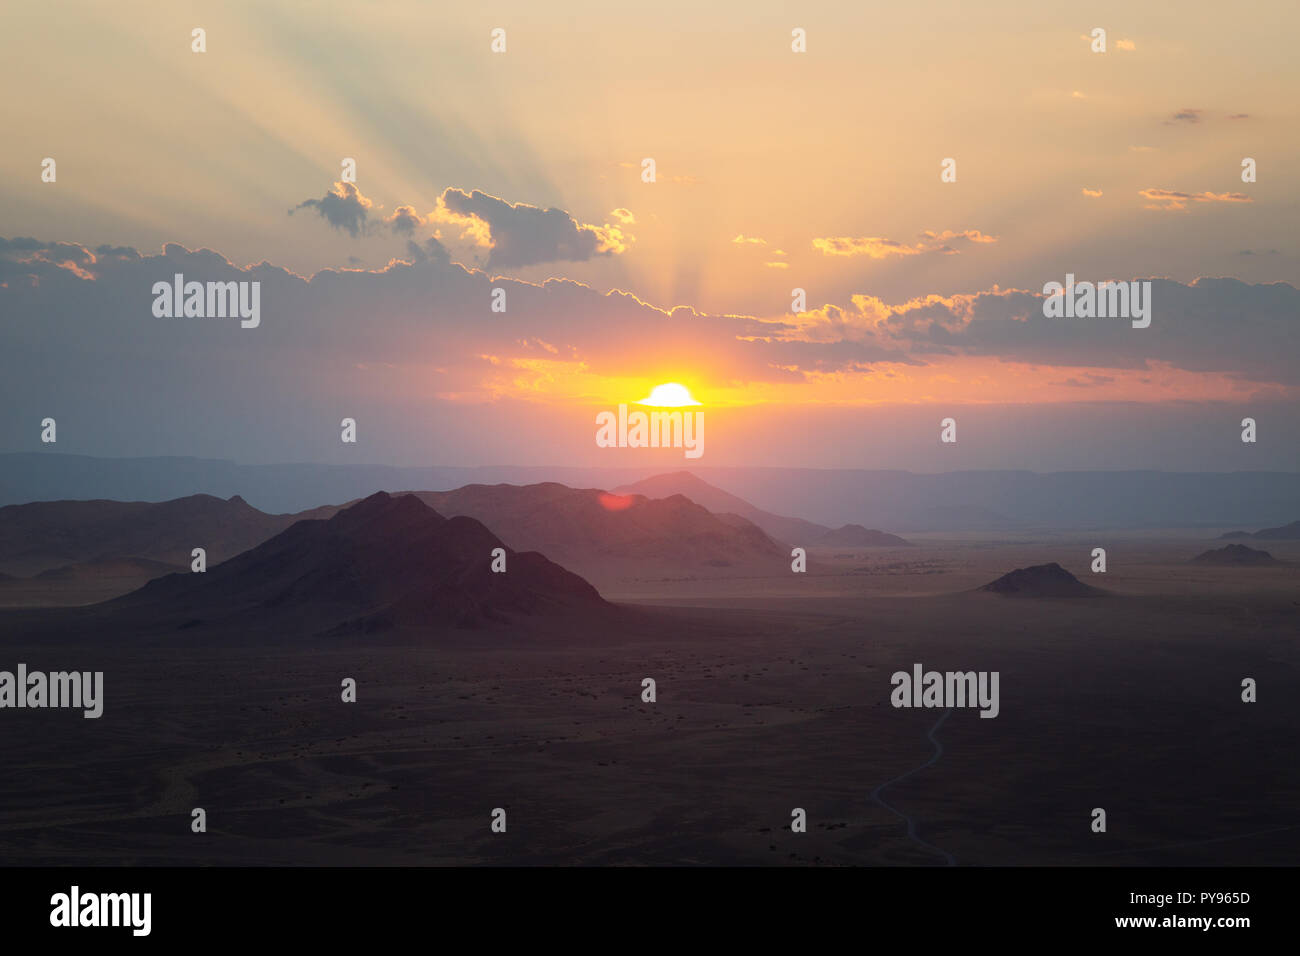 Africa sunrise - Namibia sunrise over the Namib desert landscape, Namibia Africa Stock Photo